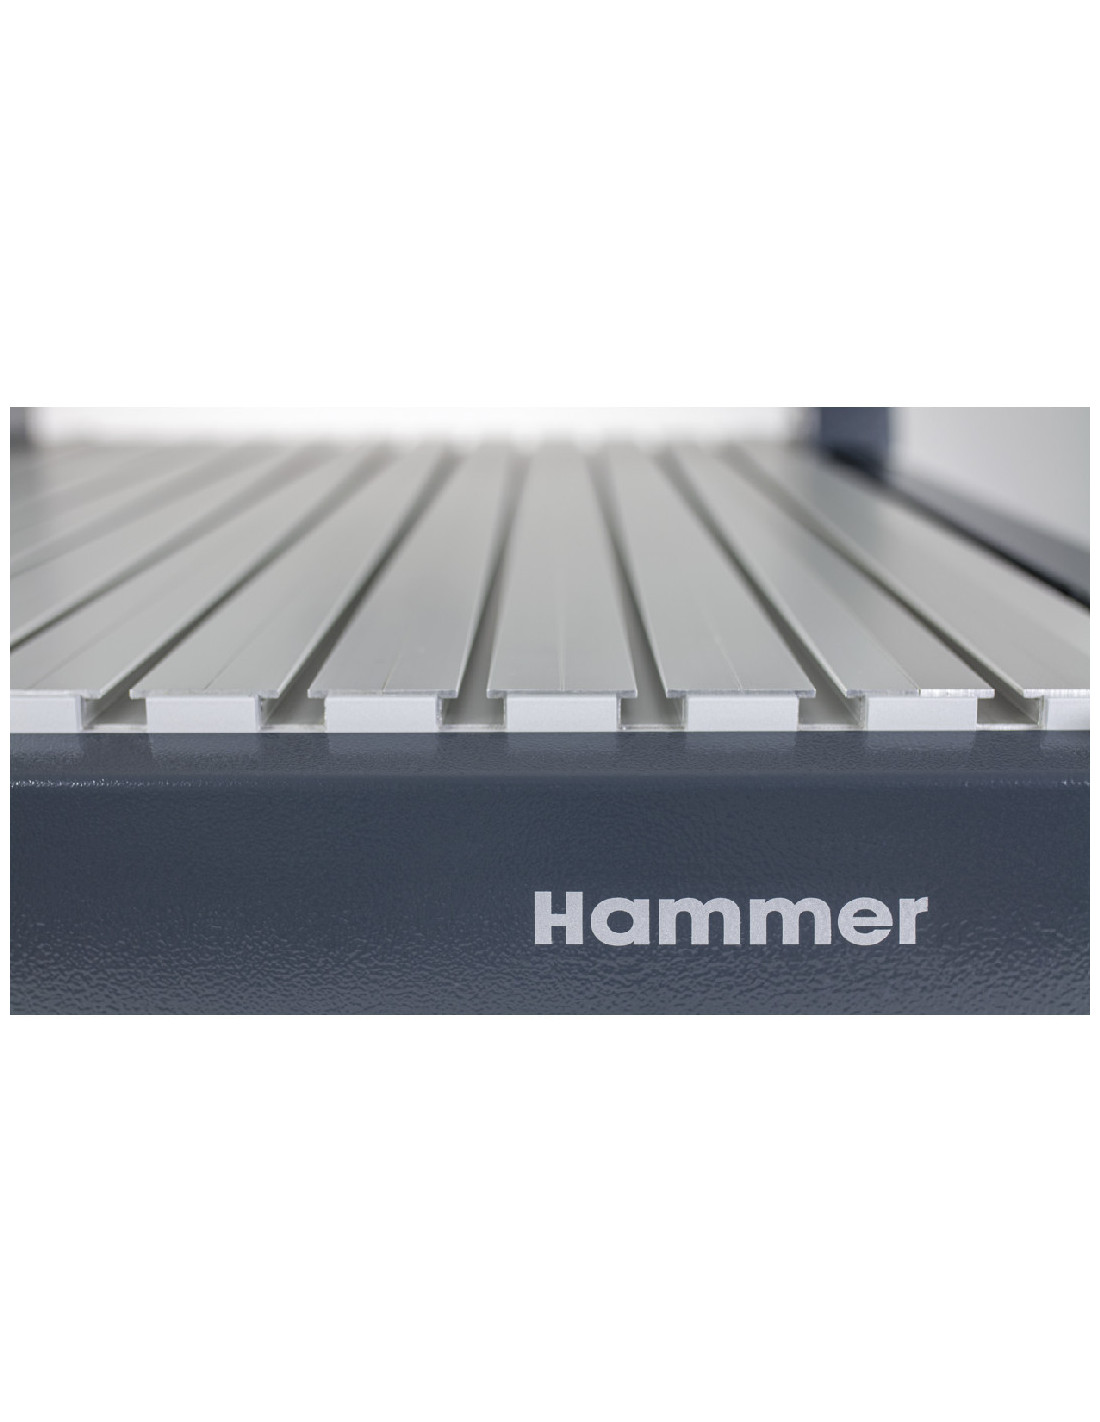 Hammer HNC 47.82 HF - CNC-fræsemaskine